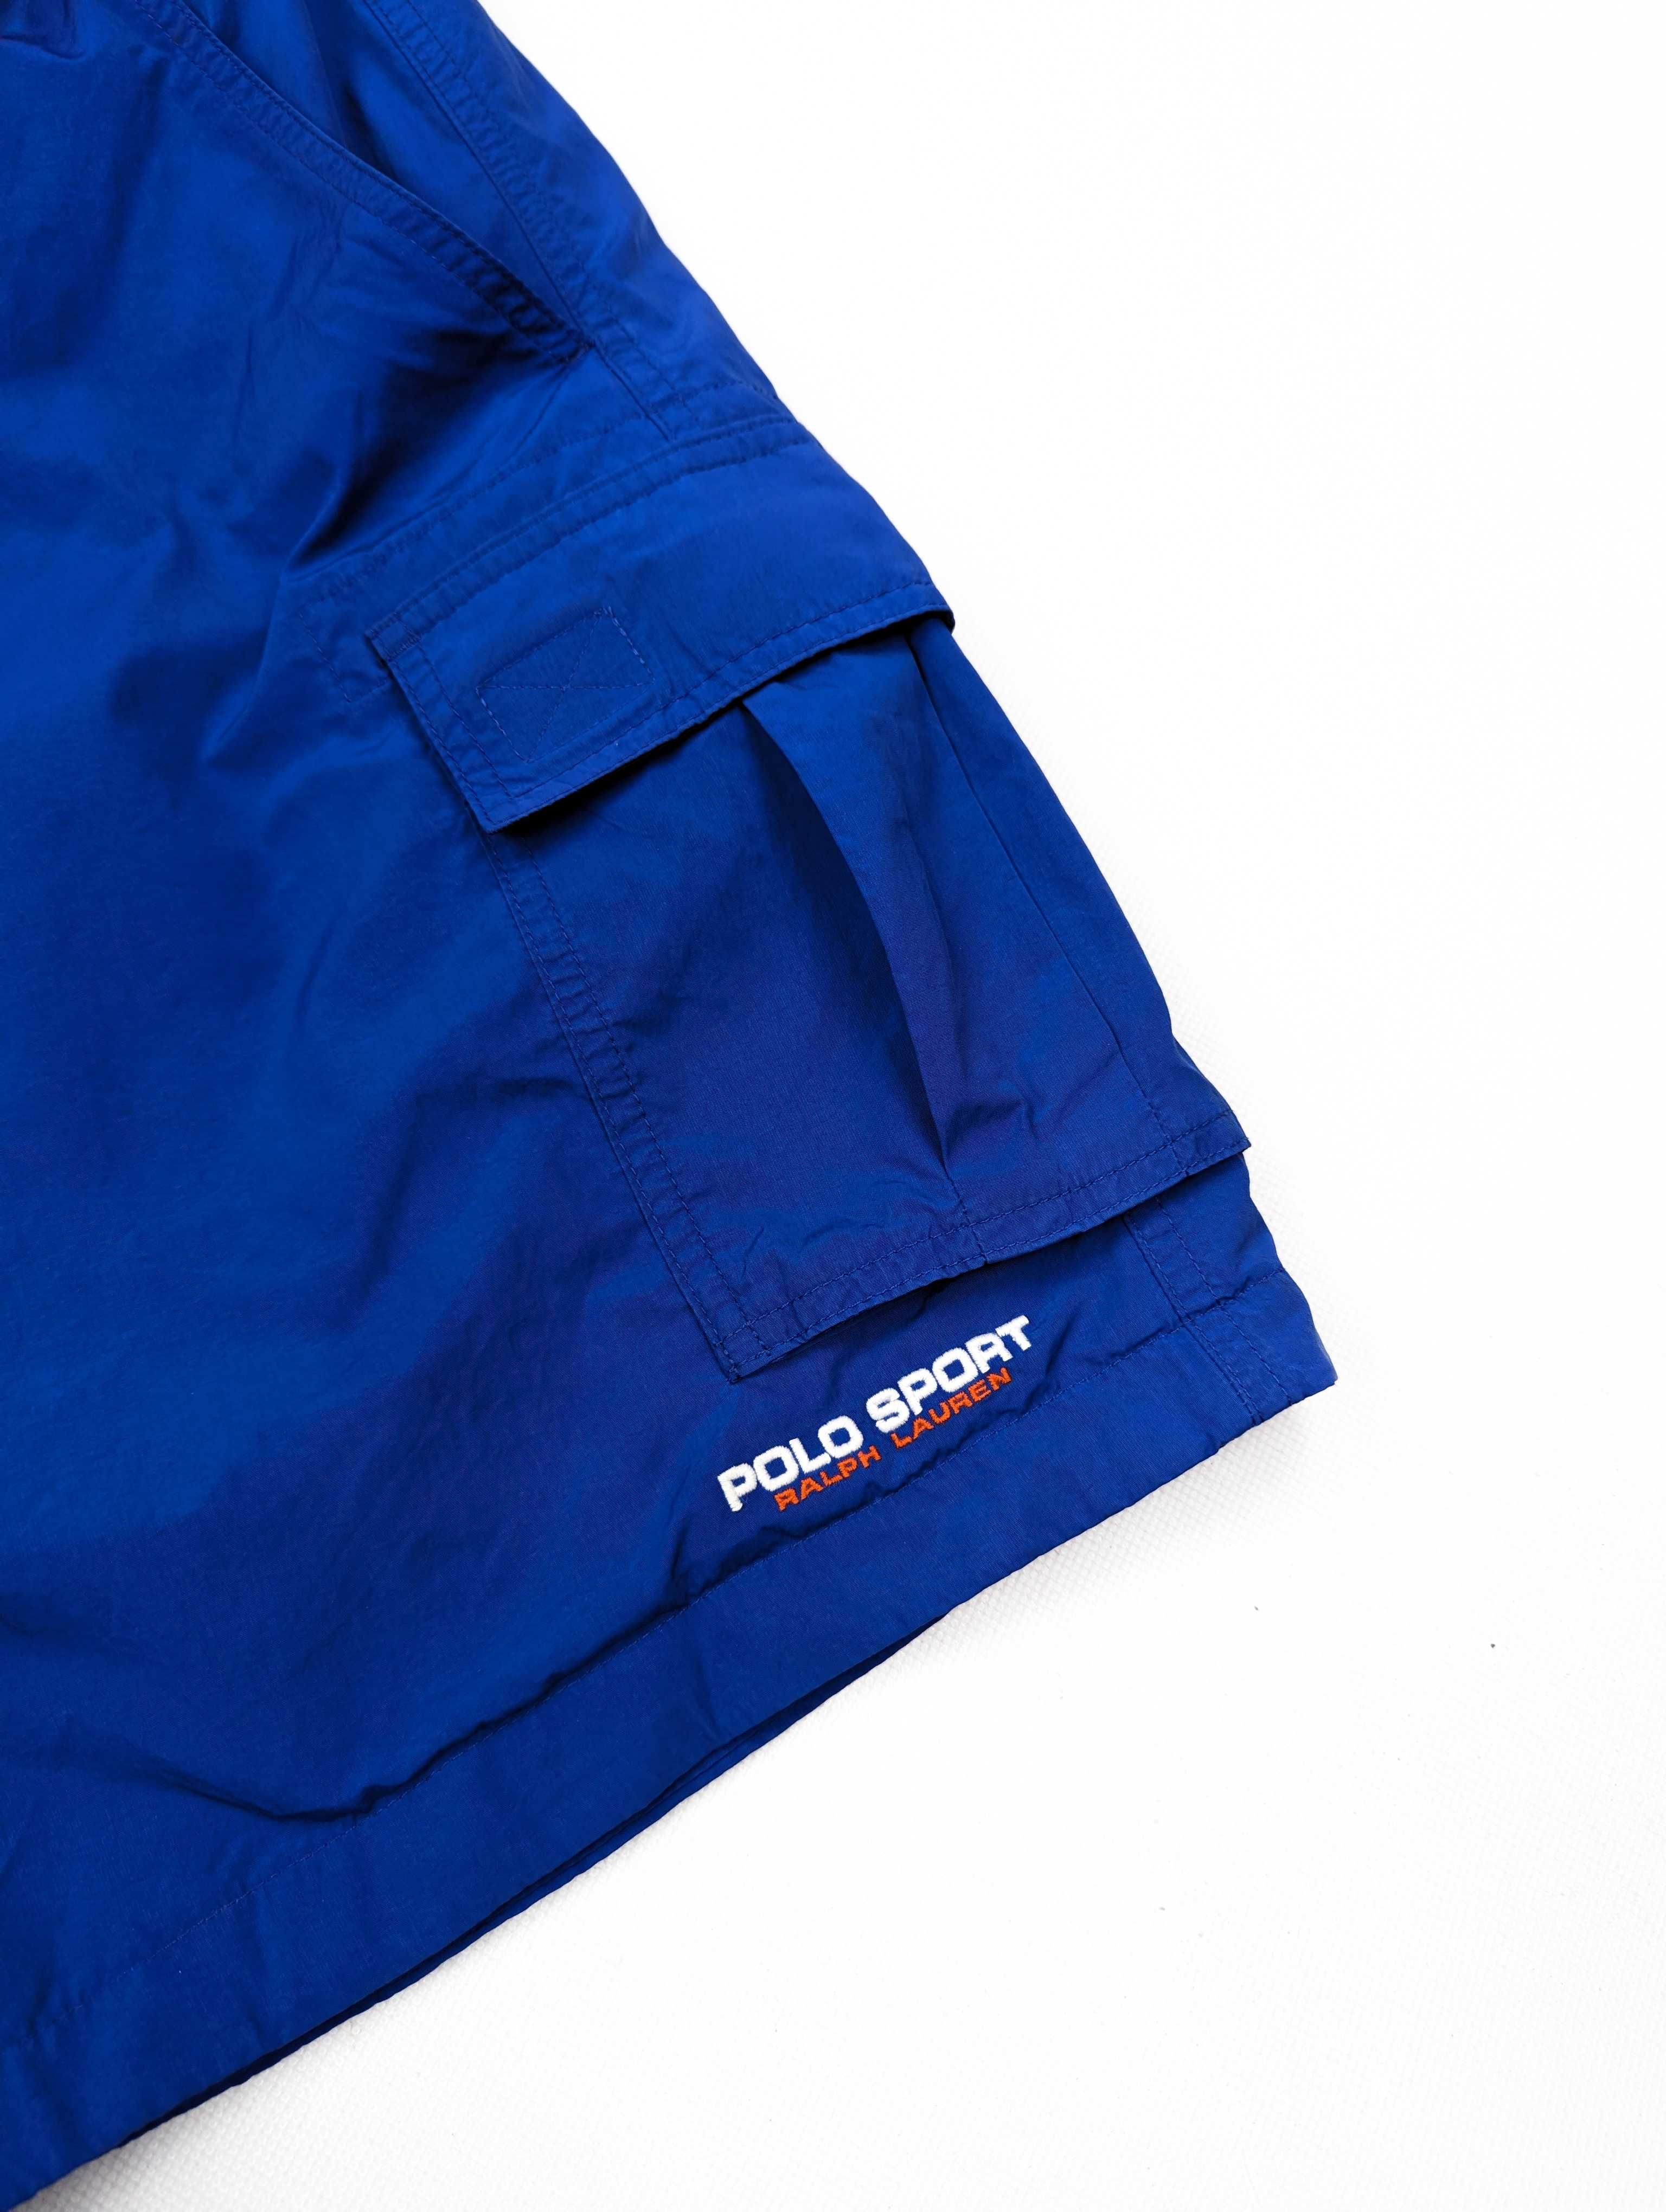 Polo Sport Ralph Lauren niebieskie spodenki szorty XXL logo